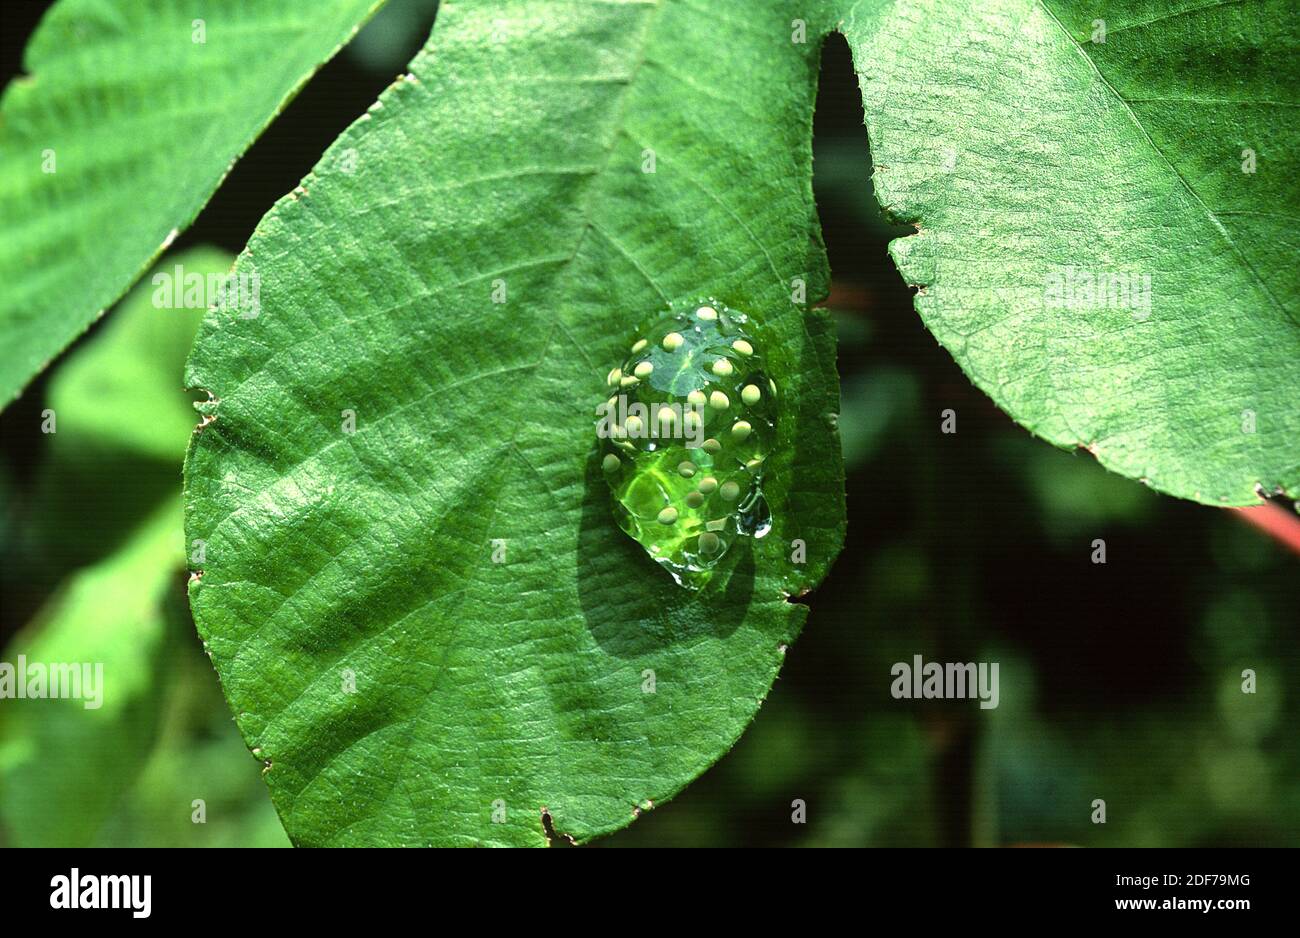 Glasfrosch (Hyalinobatrachium colymbiphyllum); Eier auf einem Blatt. Dieses Foto wurde in Costa Rica aufgenommen. Stockfoto